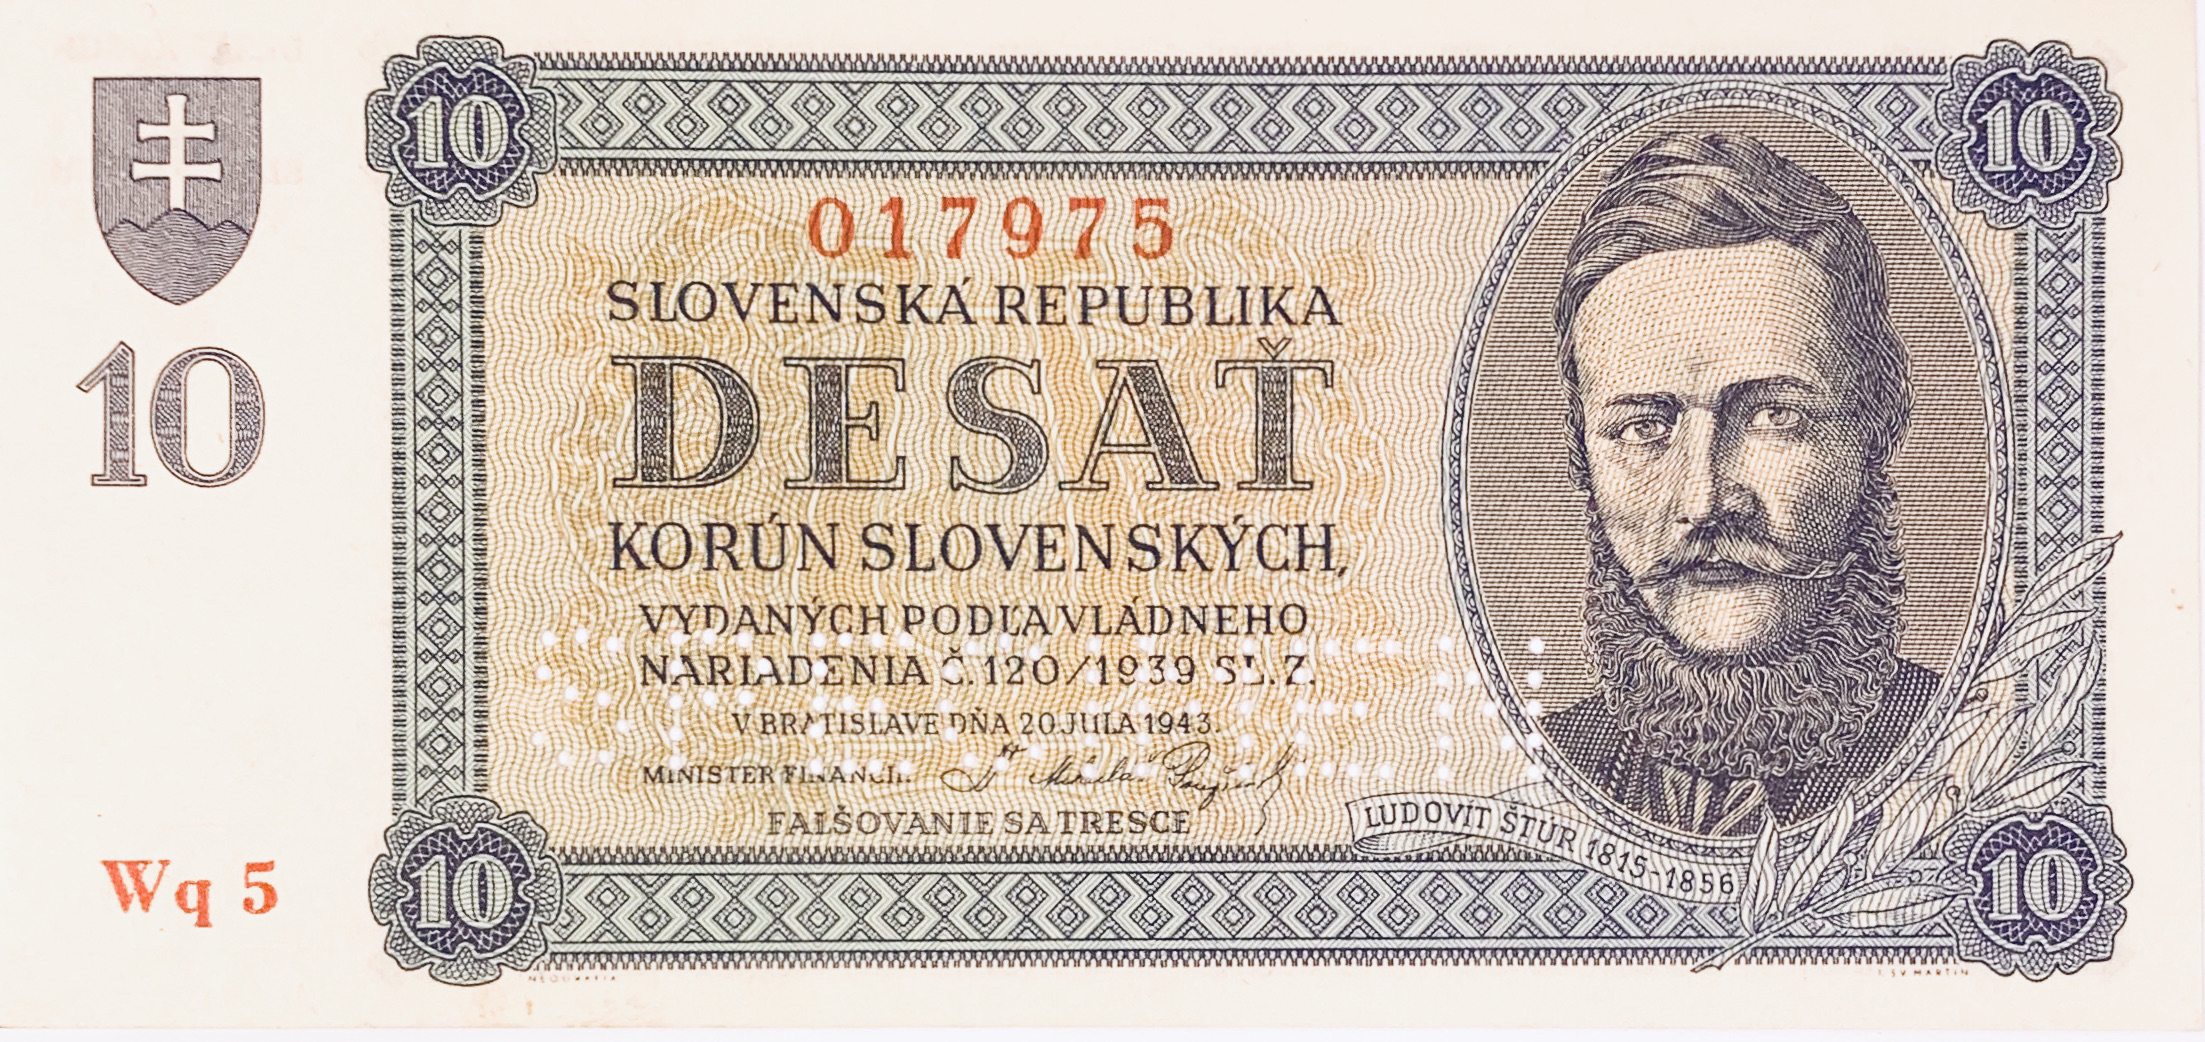 10 korun slovenských, 1943